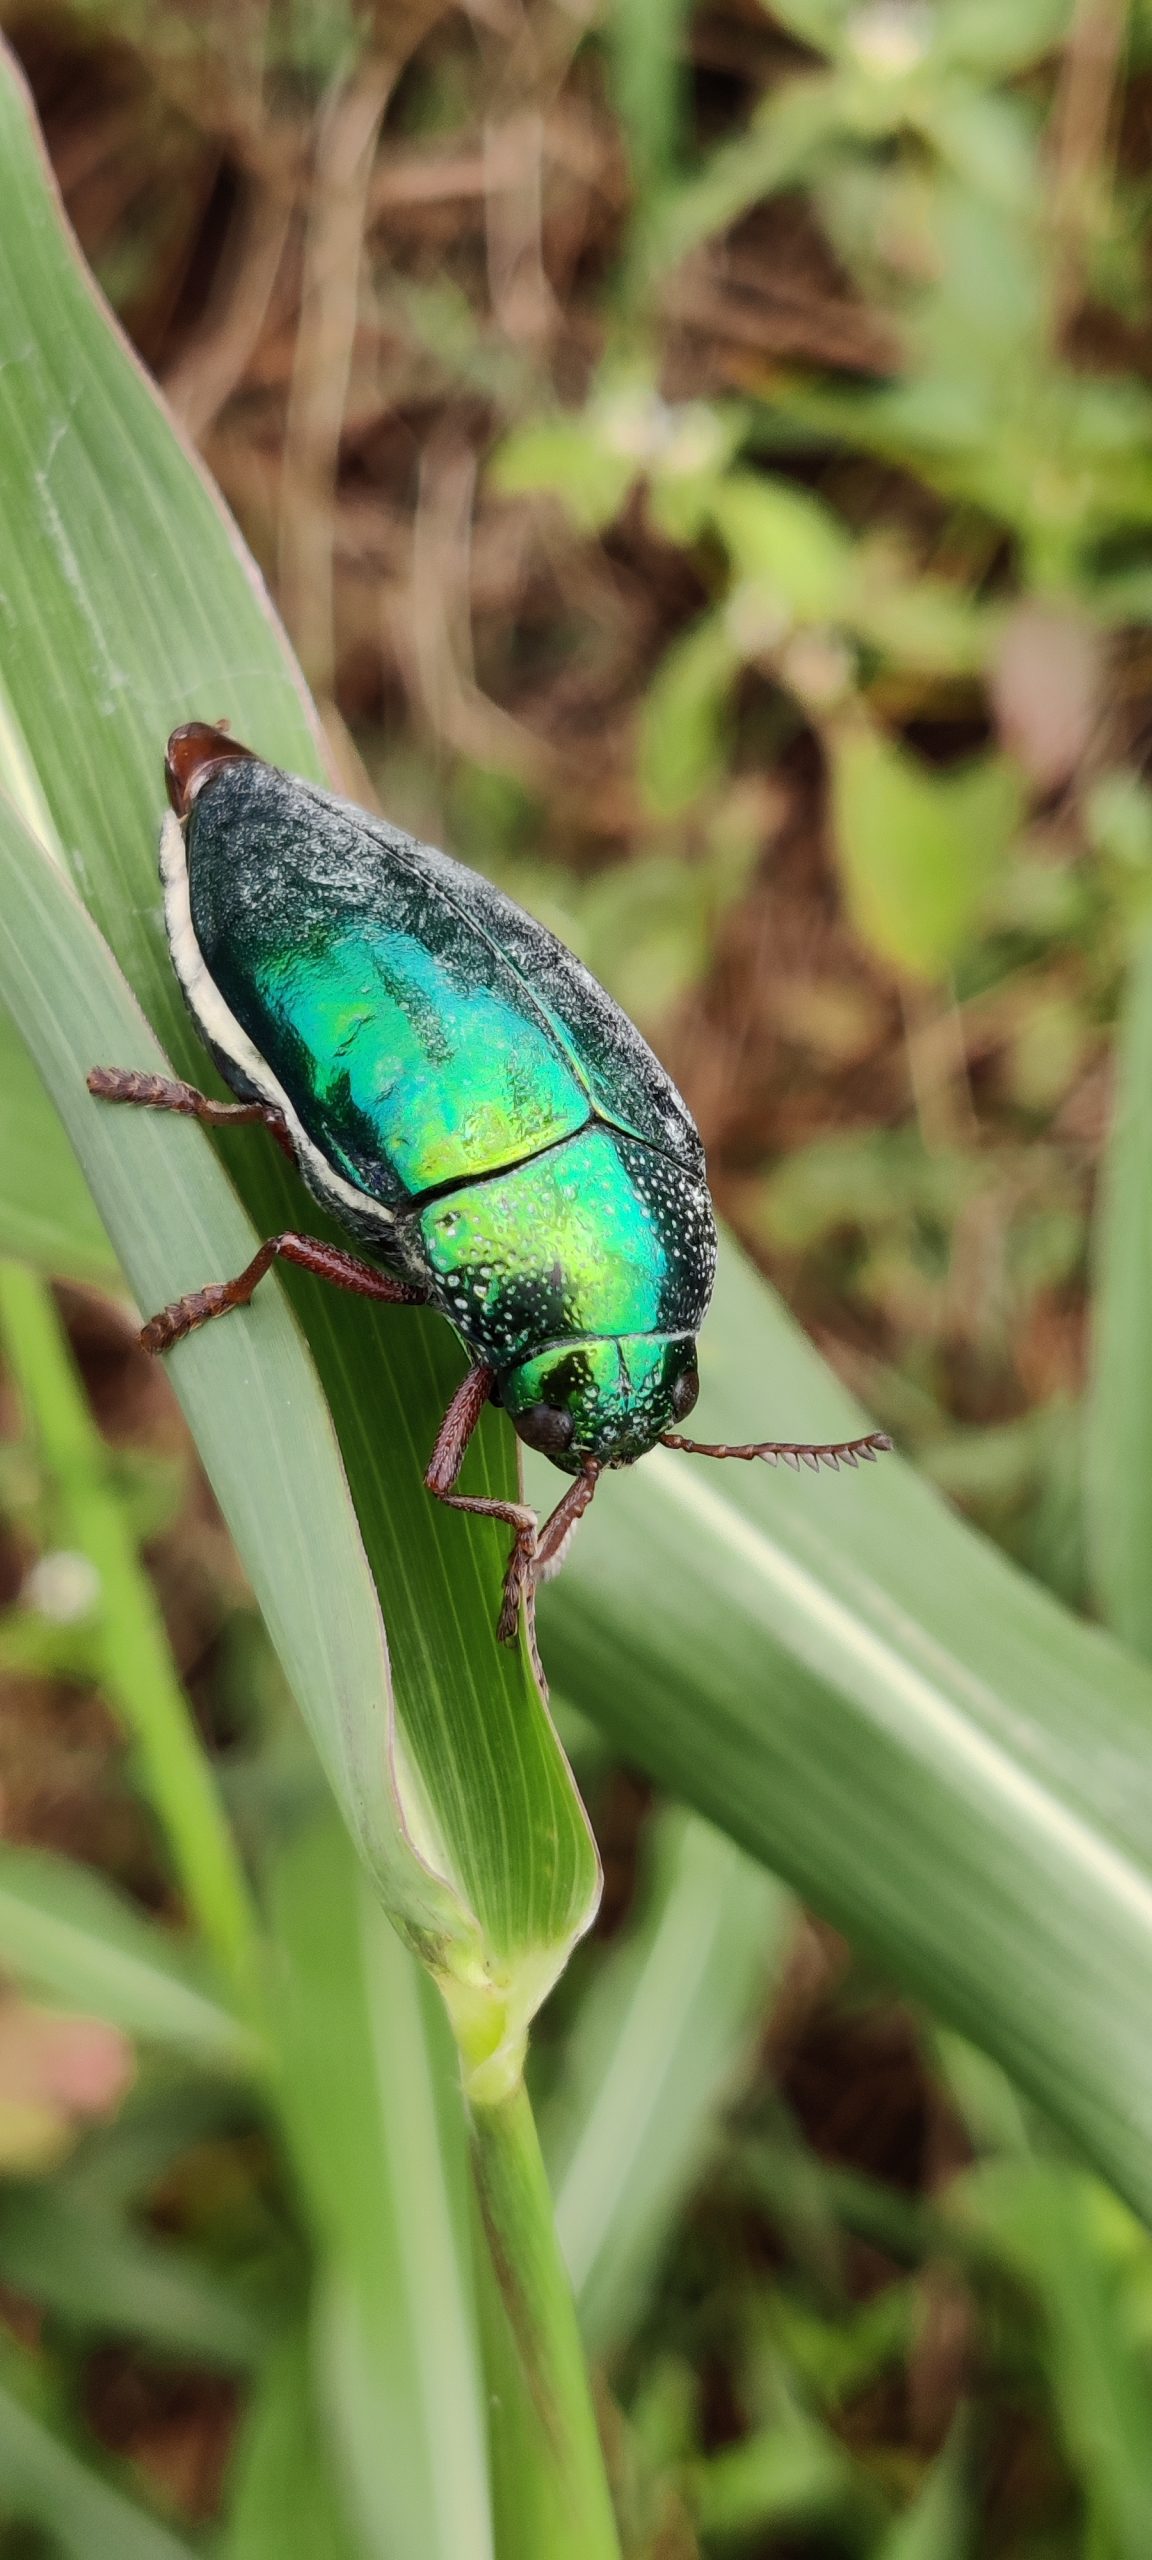 Beetle on leaf